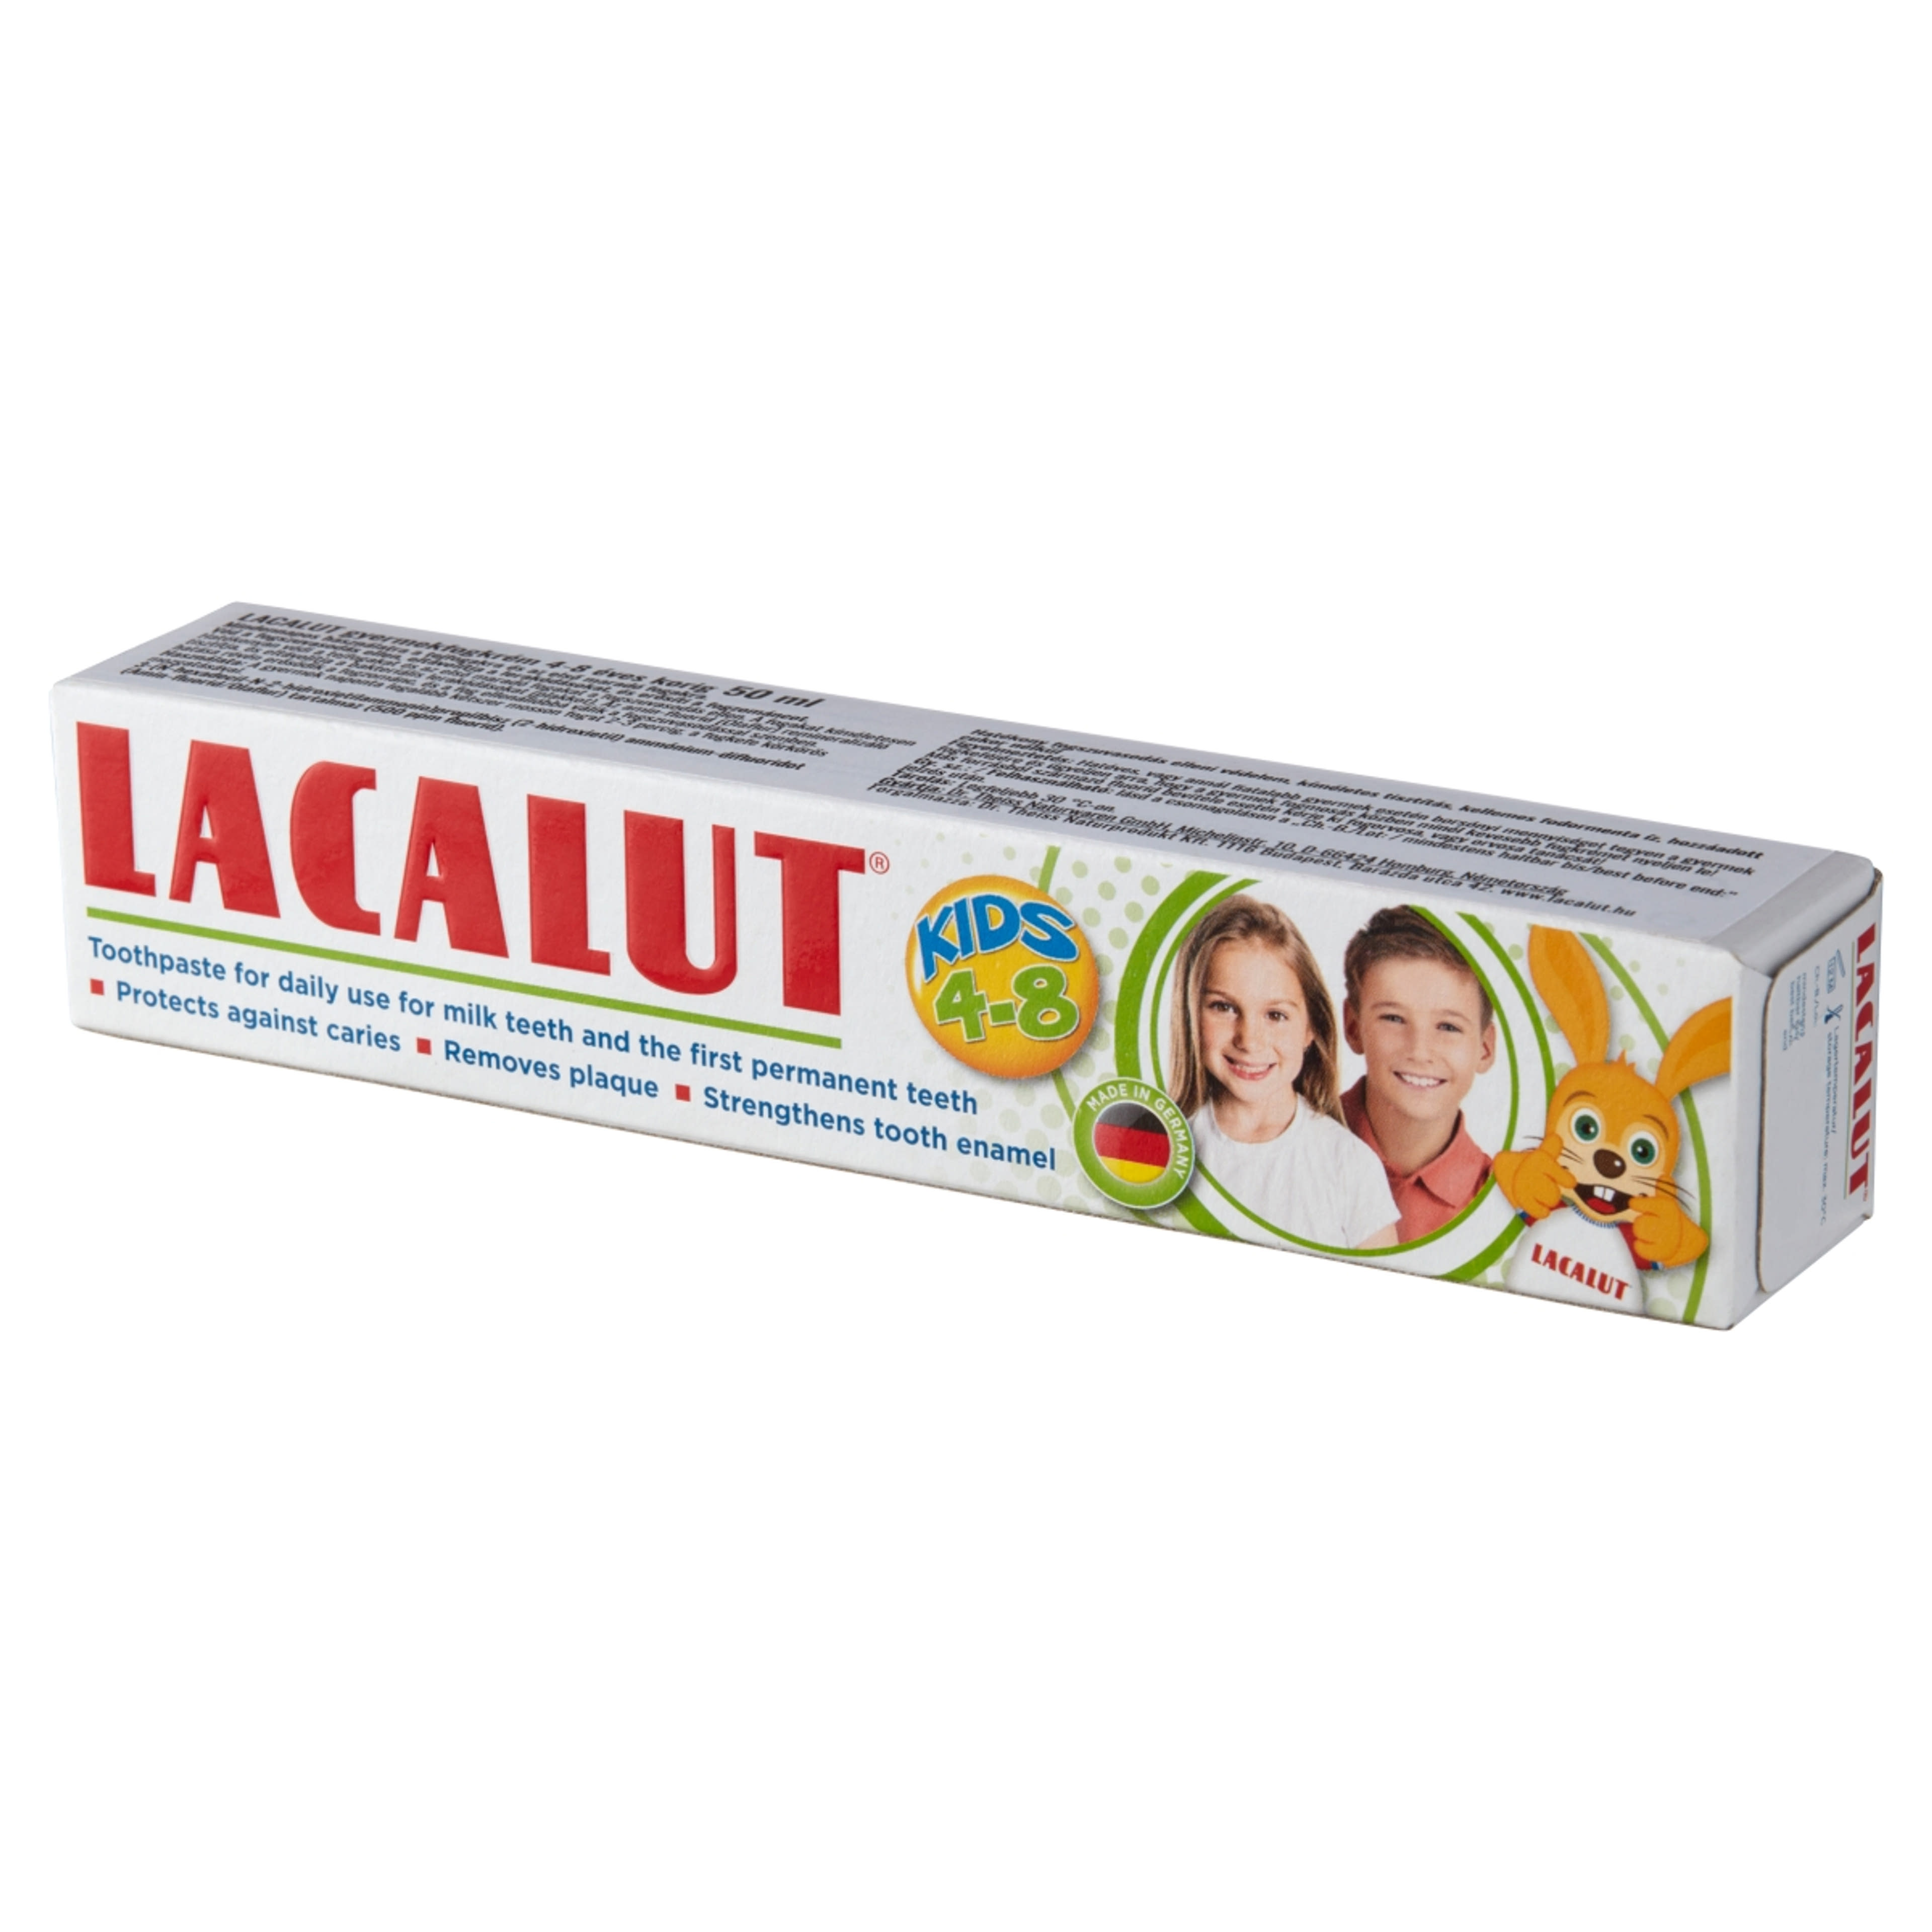 Lacalut gyerek fogkrém, 4-8 éves korig - 50 ml-3